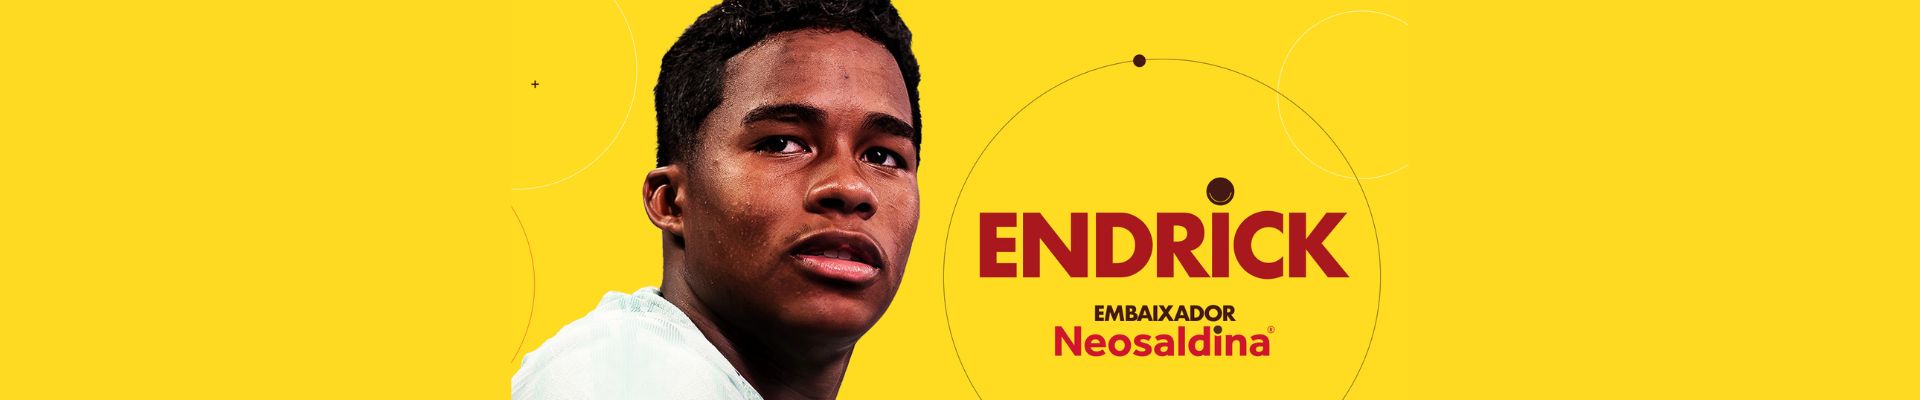 Neosaldina anuncia o jogador Endrick como novo embaixador da marca